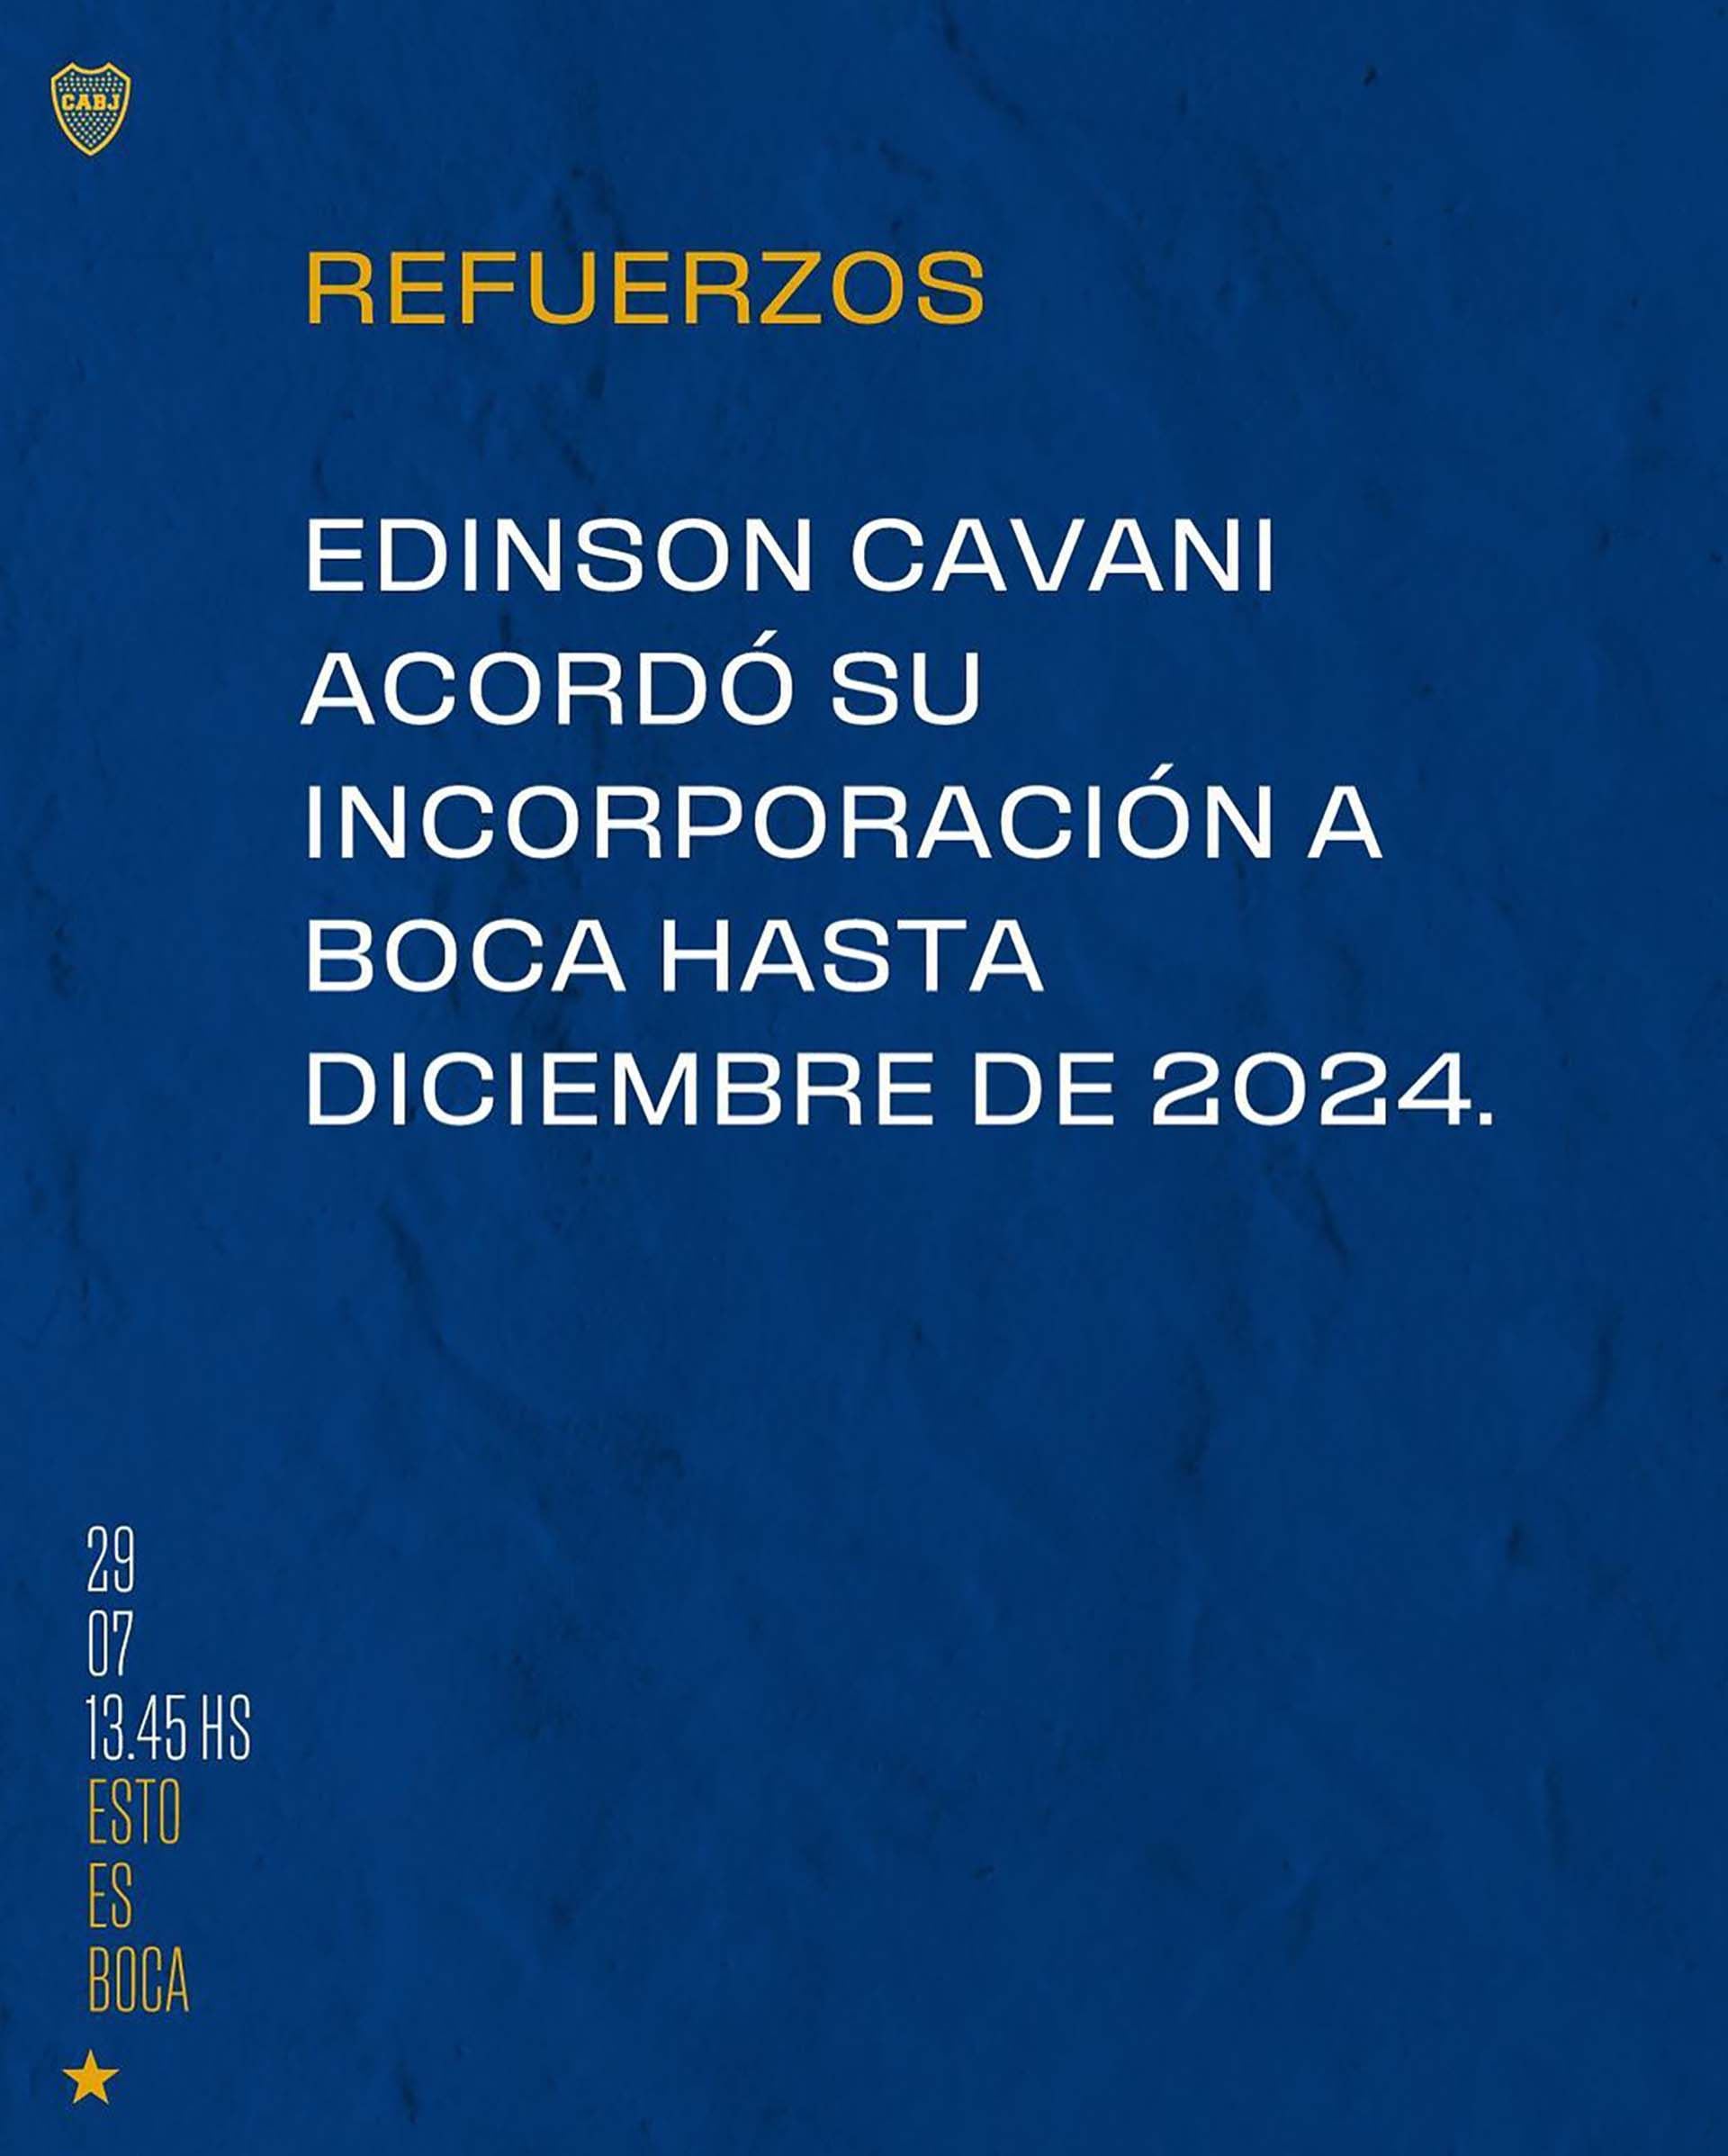 La nueva cuenta "estoesboca.futbol" confirmó el arribo de Edinson Cavani a Boca 